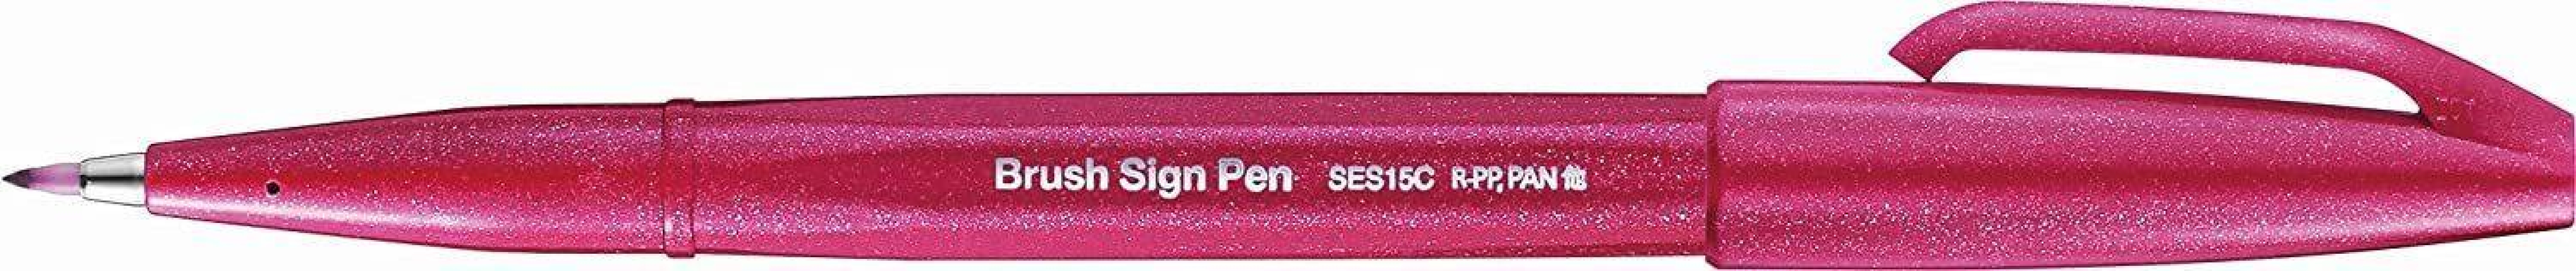 Pentel Fude Touch Brush Sign Pen - Burrgundy